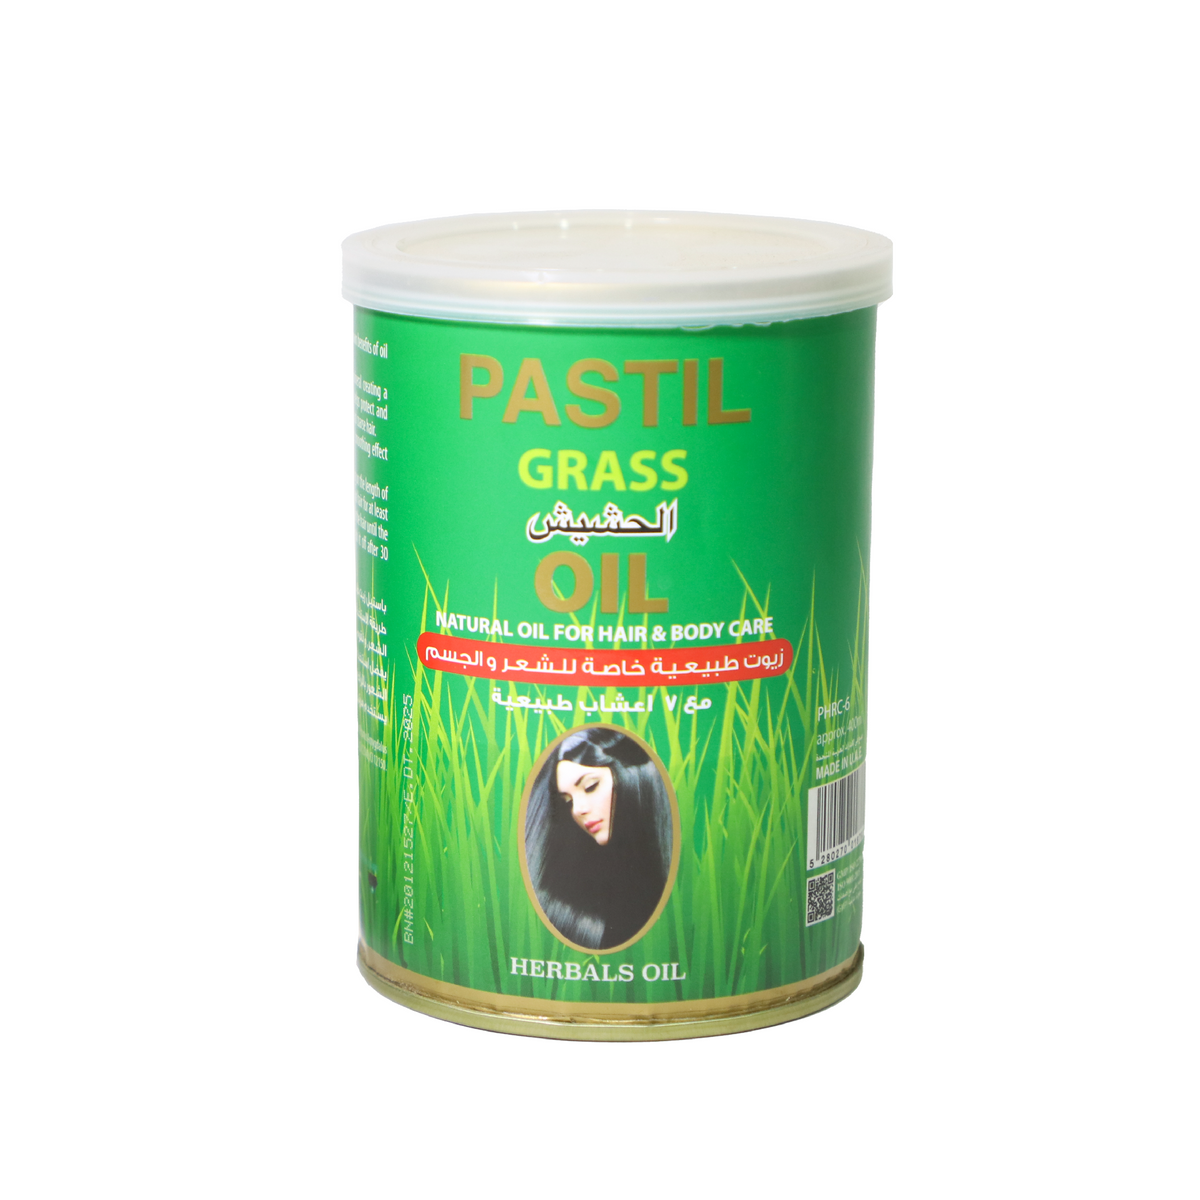 Pastil Hair Oil 400Ml Grass